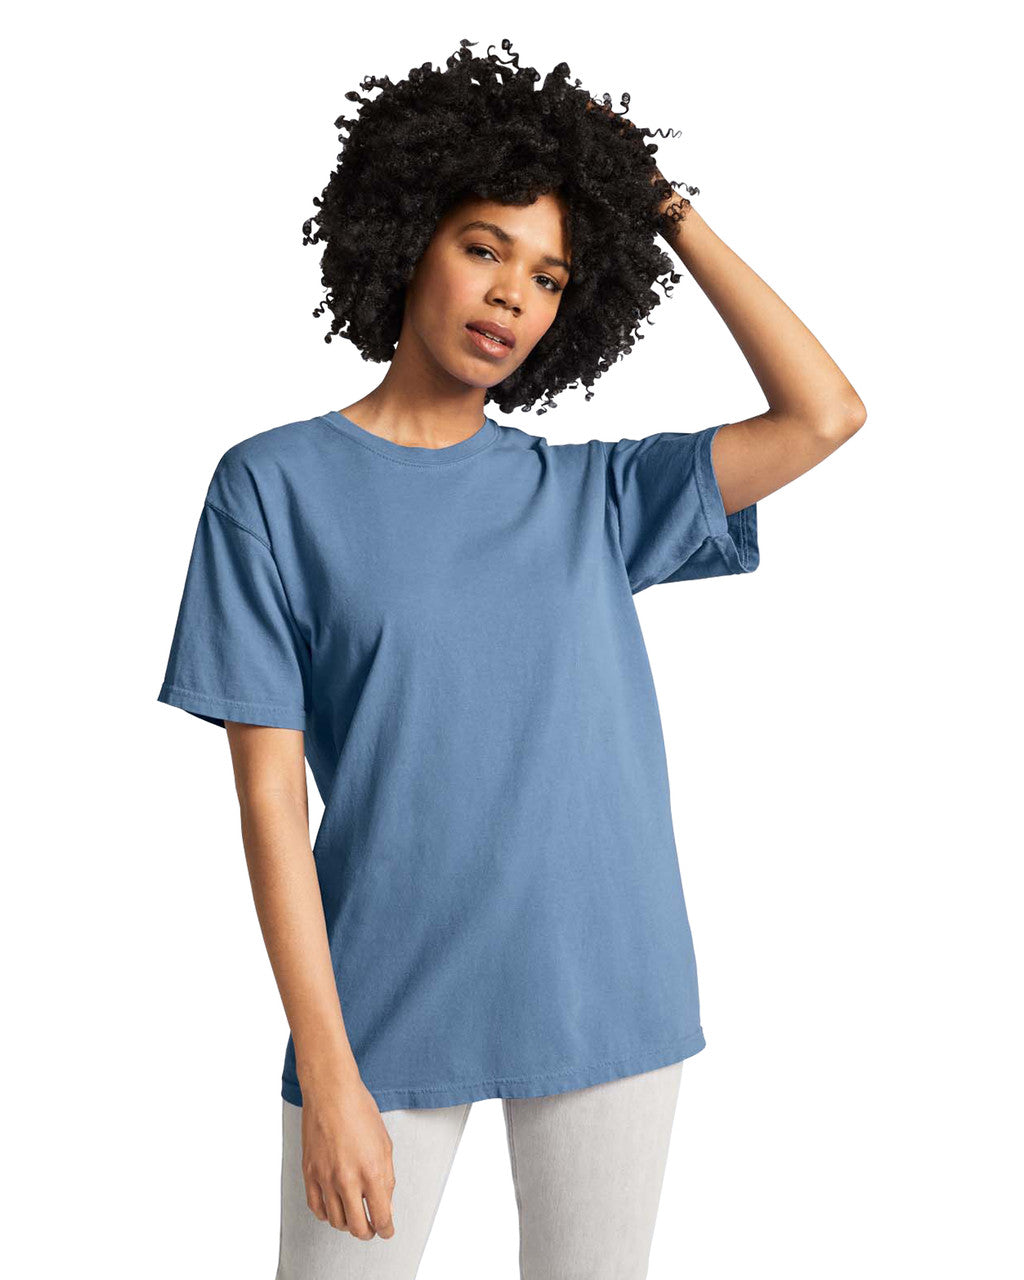 Camiseta Comfort Colors Azul indigo claro Ref. 1717